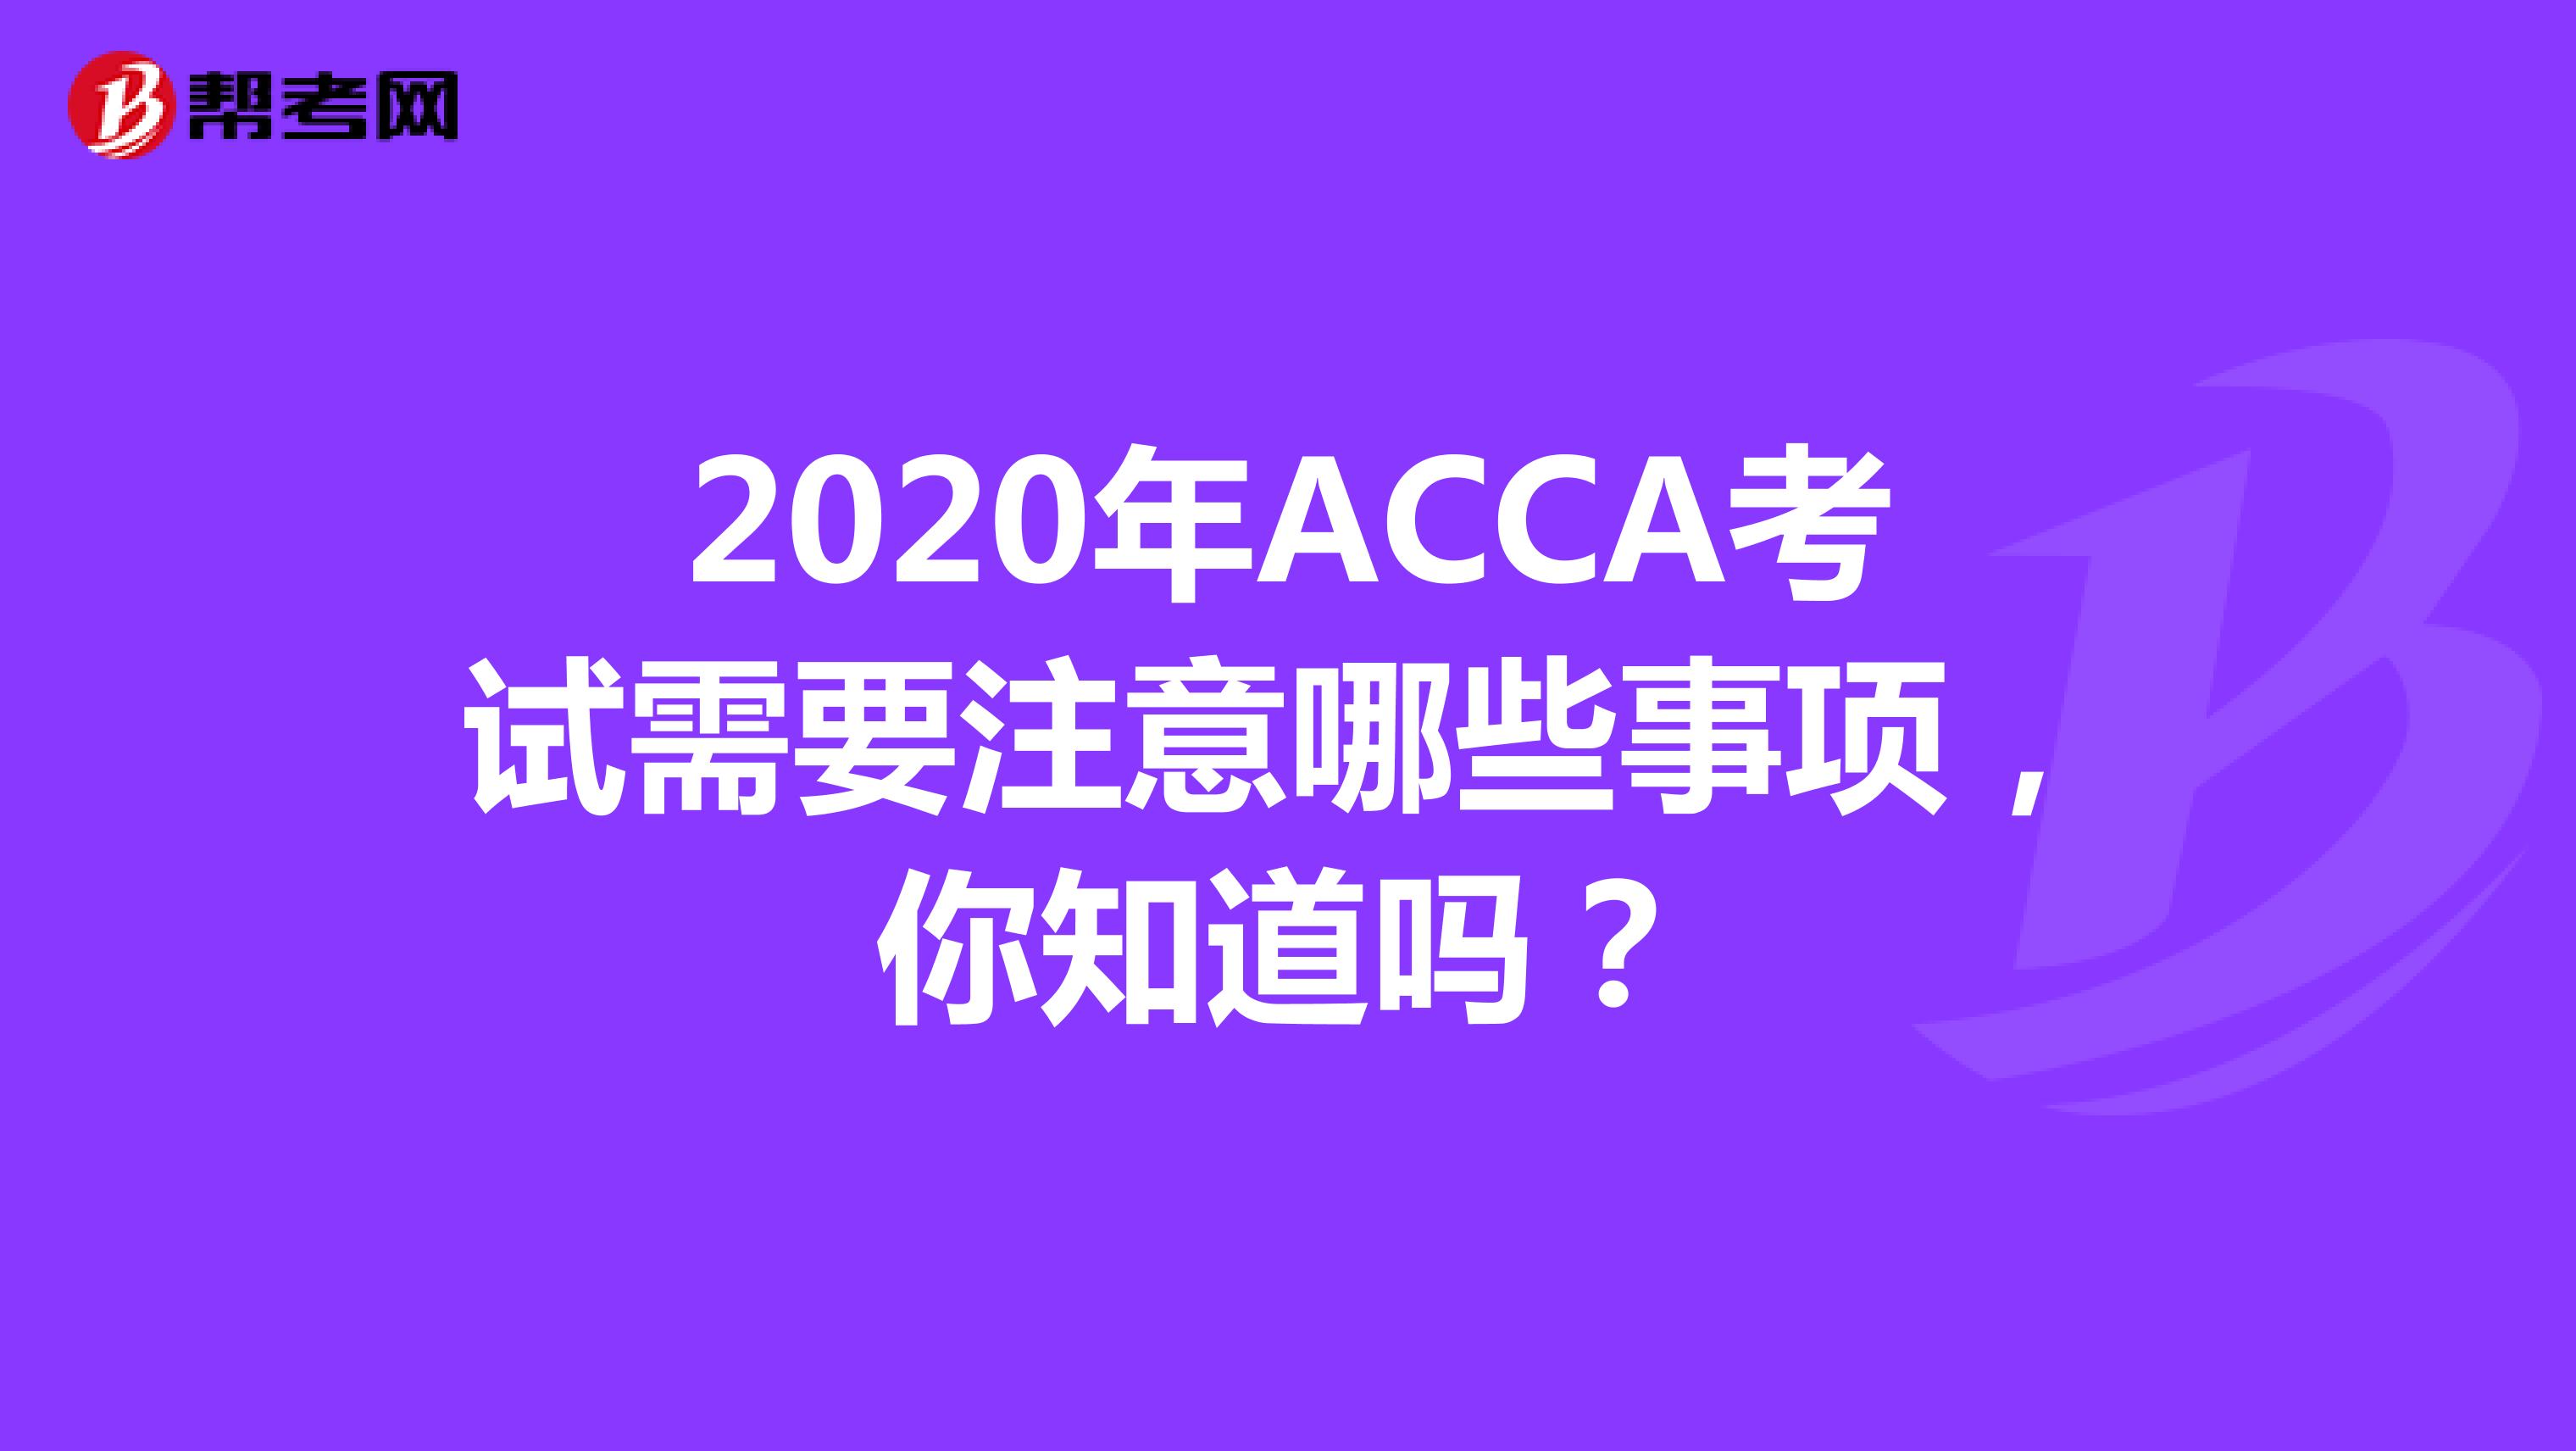 2020年ACCA考试需要注意哪些事项，你知道吗？